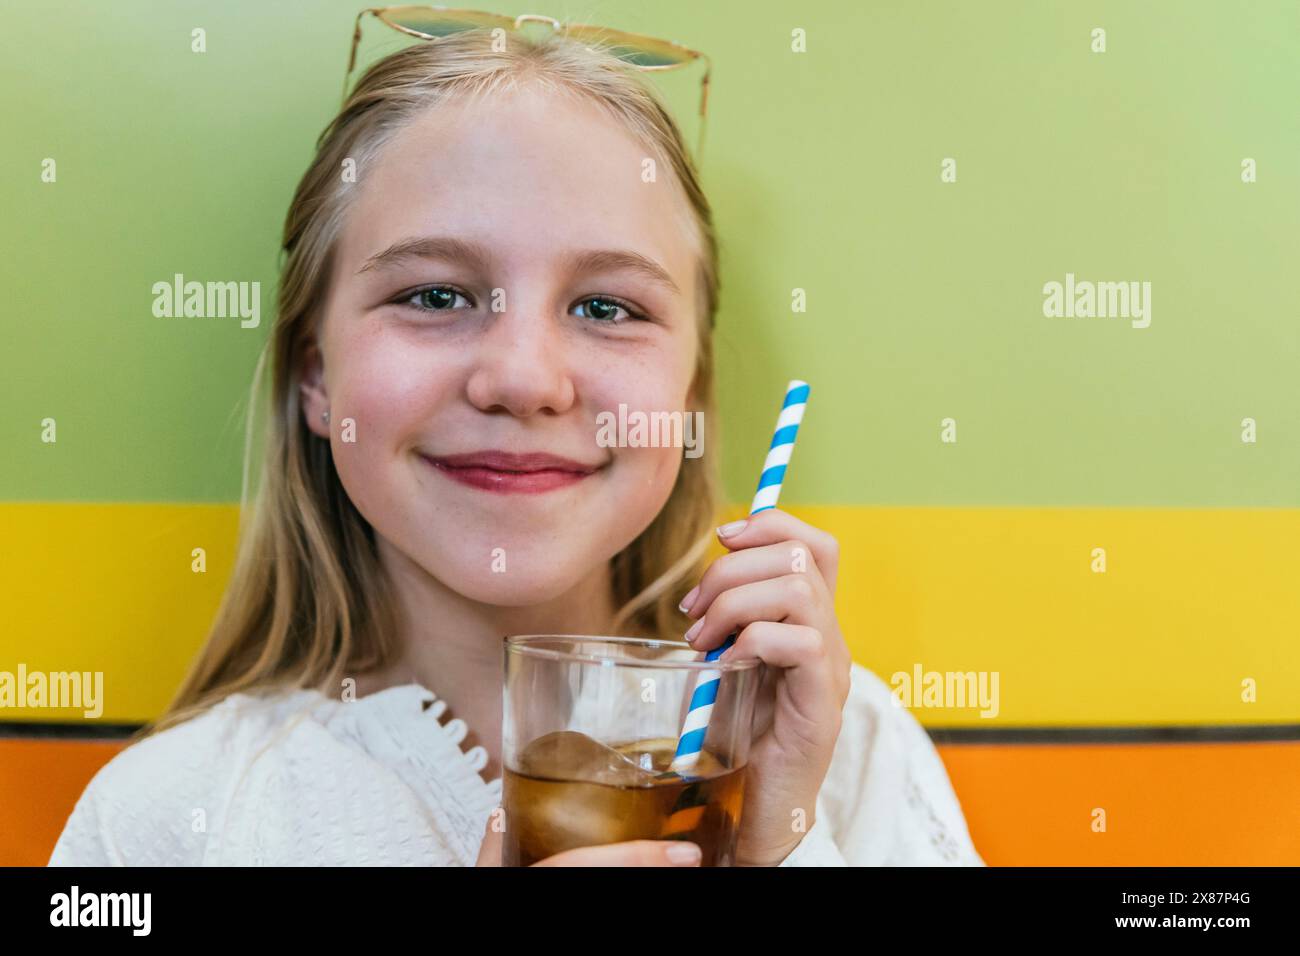 Lächelndes Mädchen, das ein Glas Cola in der Nähe einer farbigen Wand hält Stockfoto